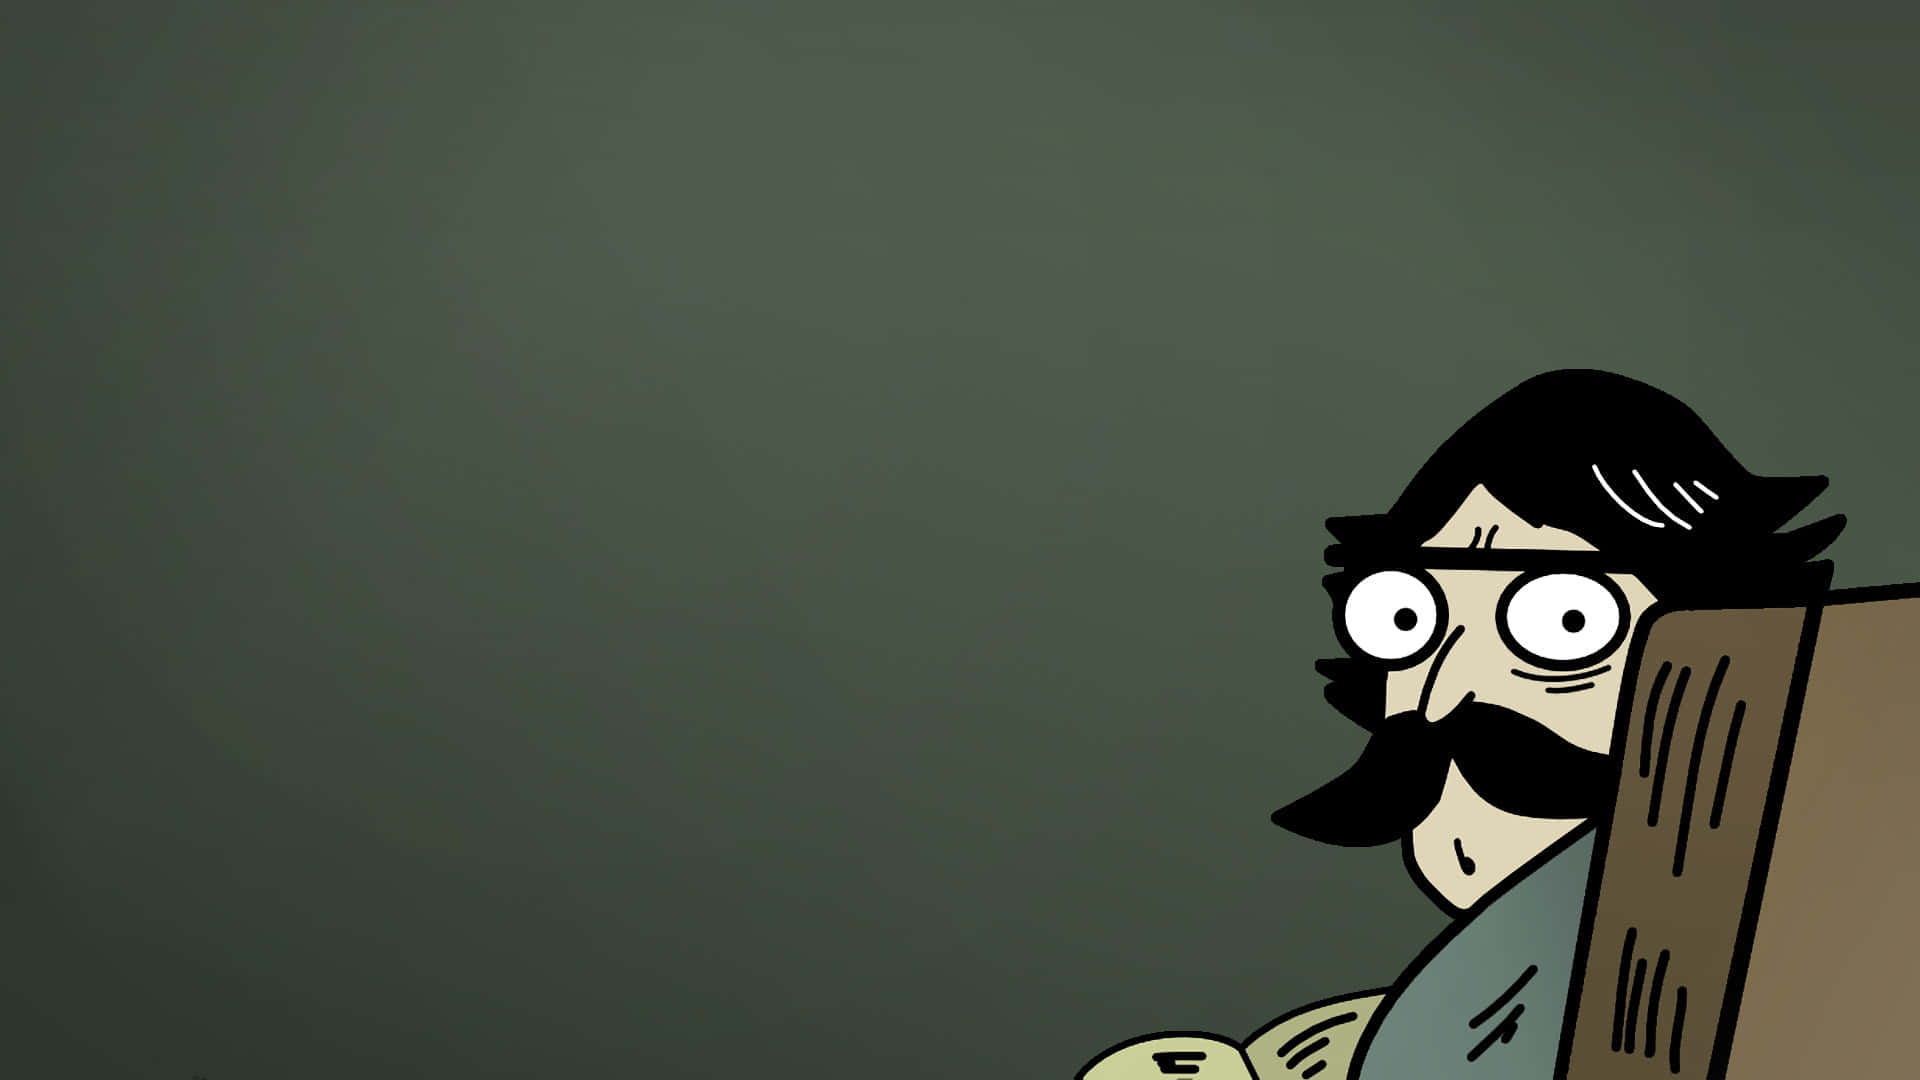 En tegneseriemand med en mustasche og briller siddende foran et mørkt rum. Wallpaper